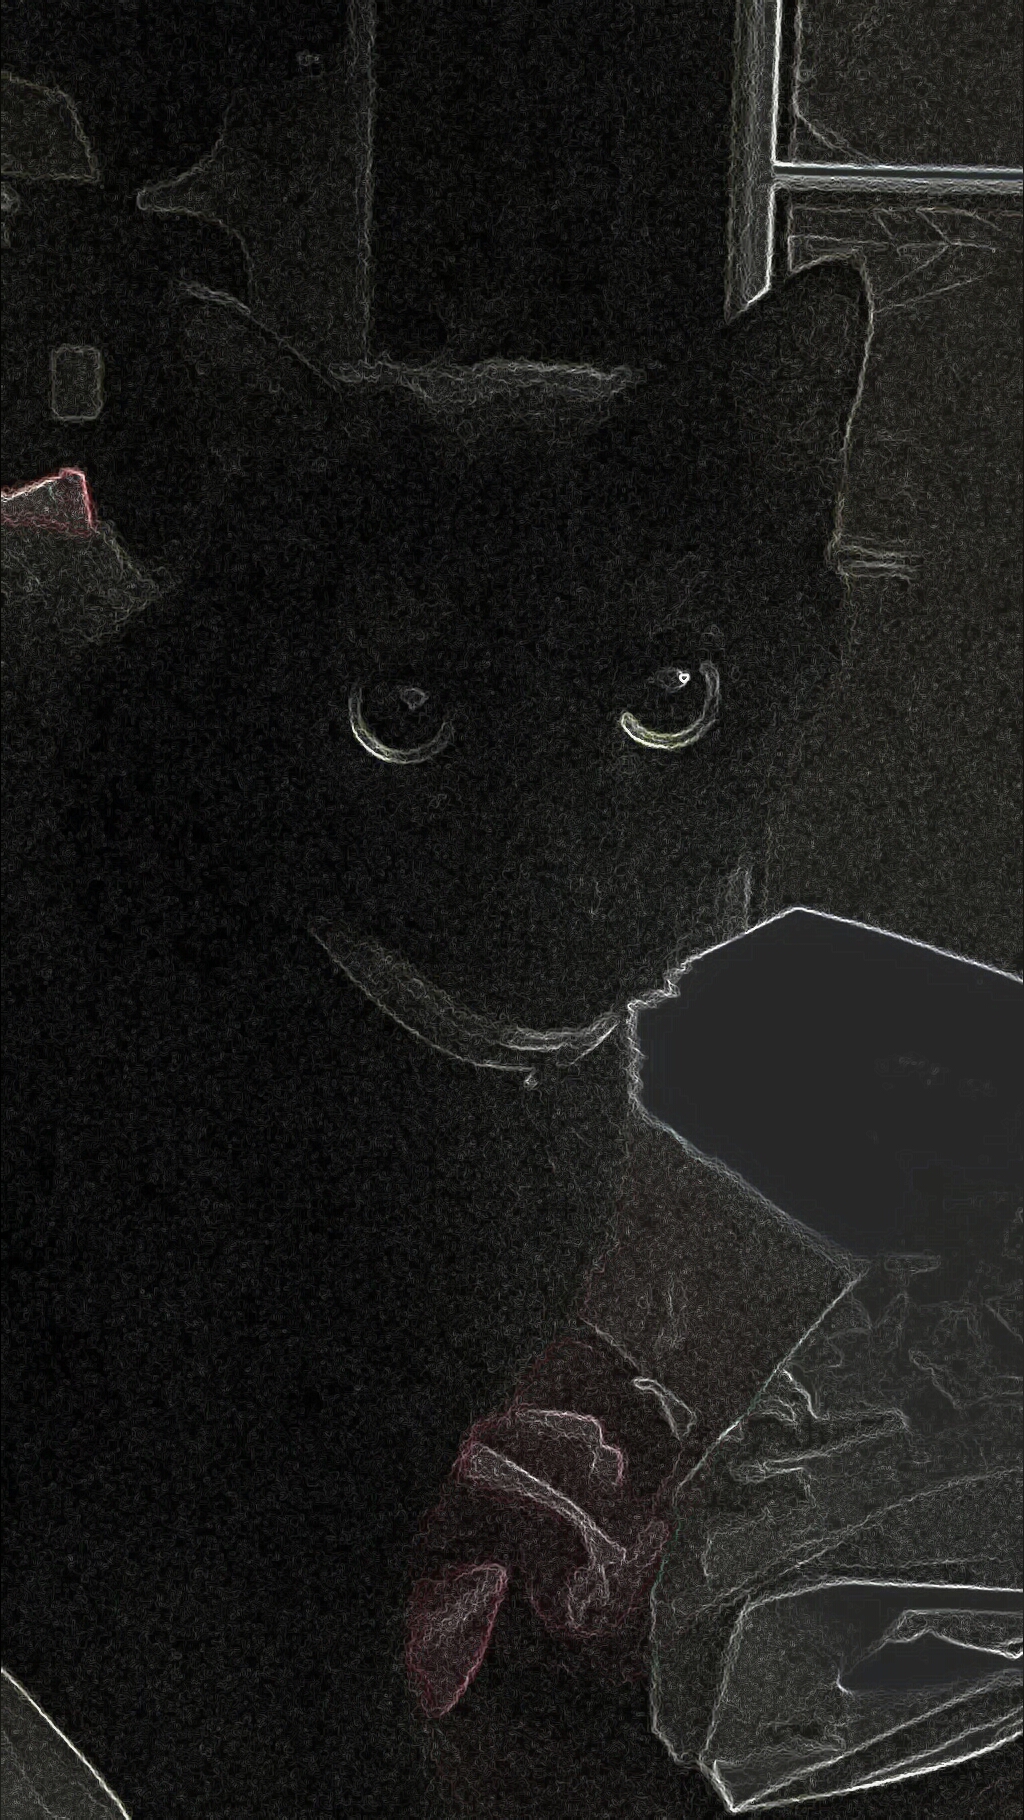 The Black Kitten, Creepypasta Wiki